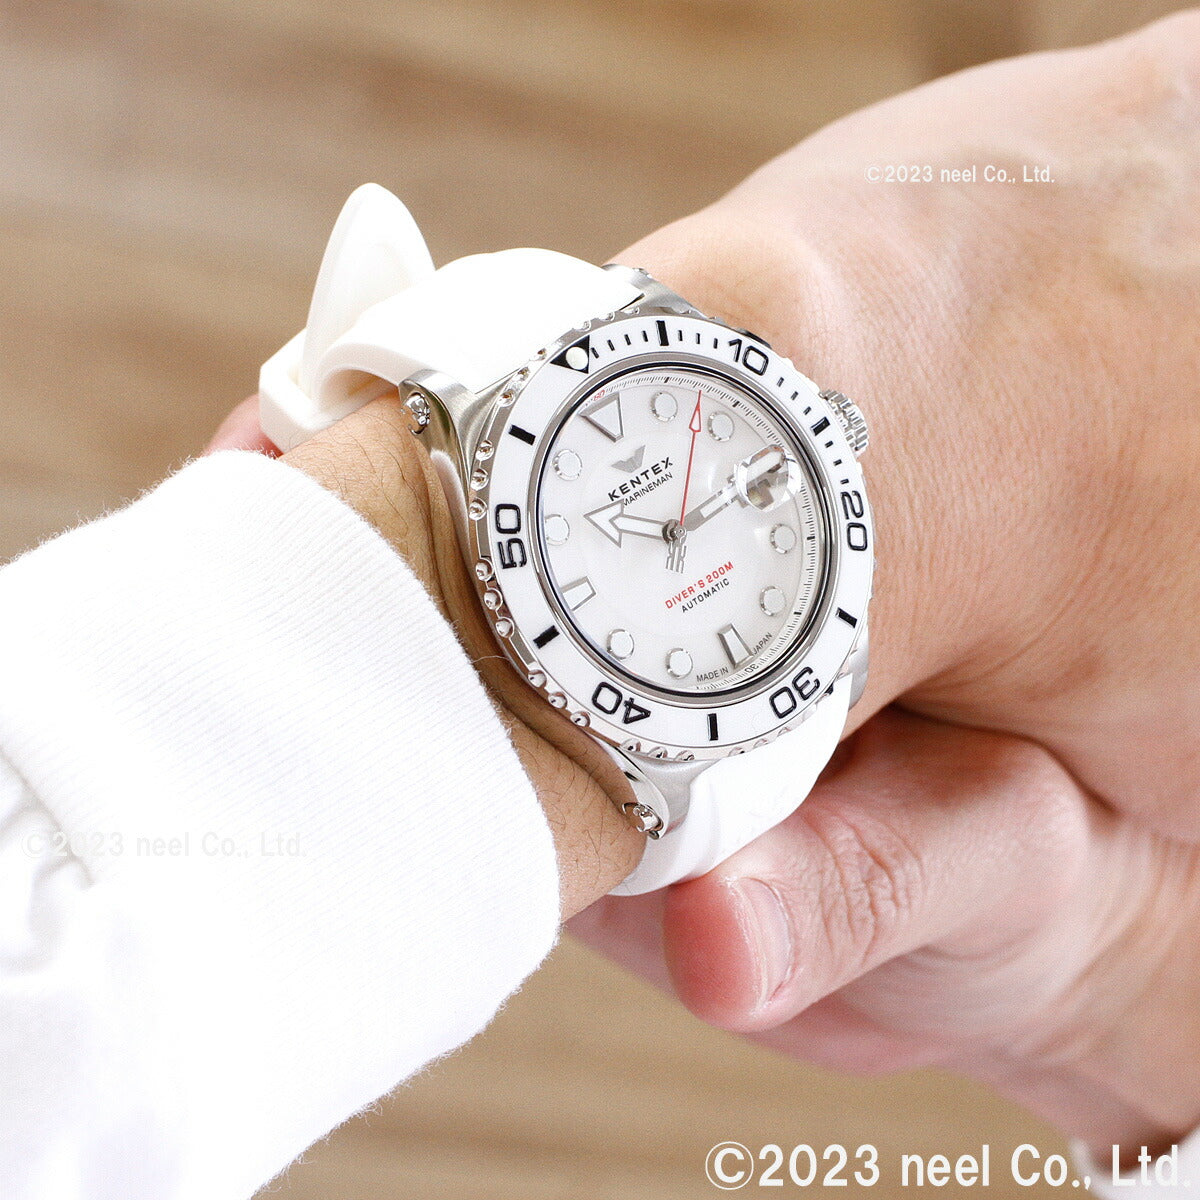 ケンテックス KENTEX 限定モデル 腕時計 時計 メンズ マリンマン シーホースII 日本製 S706M-15